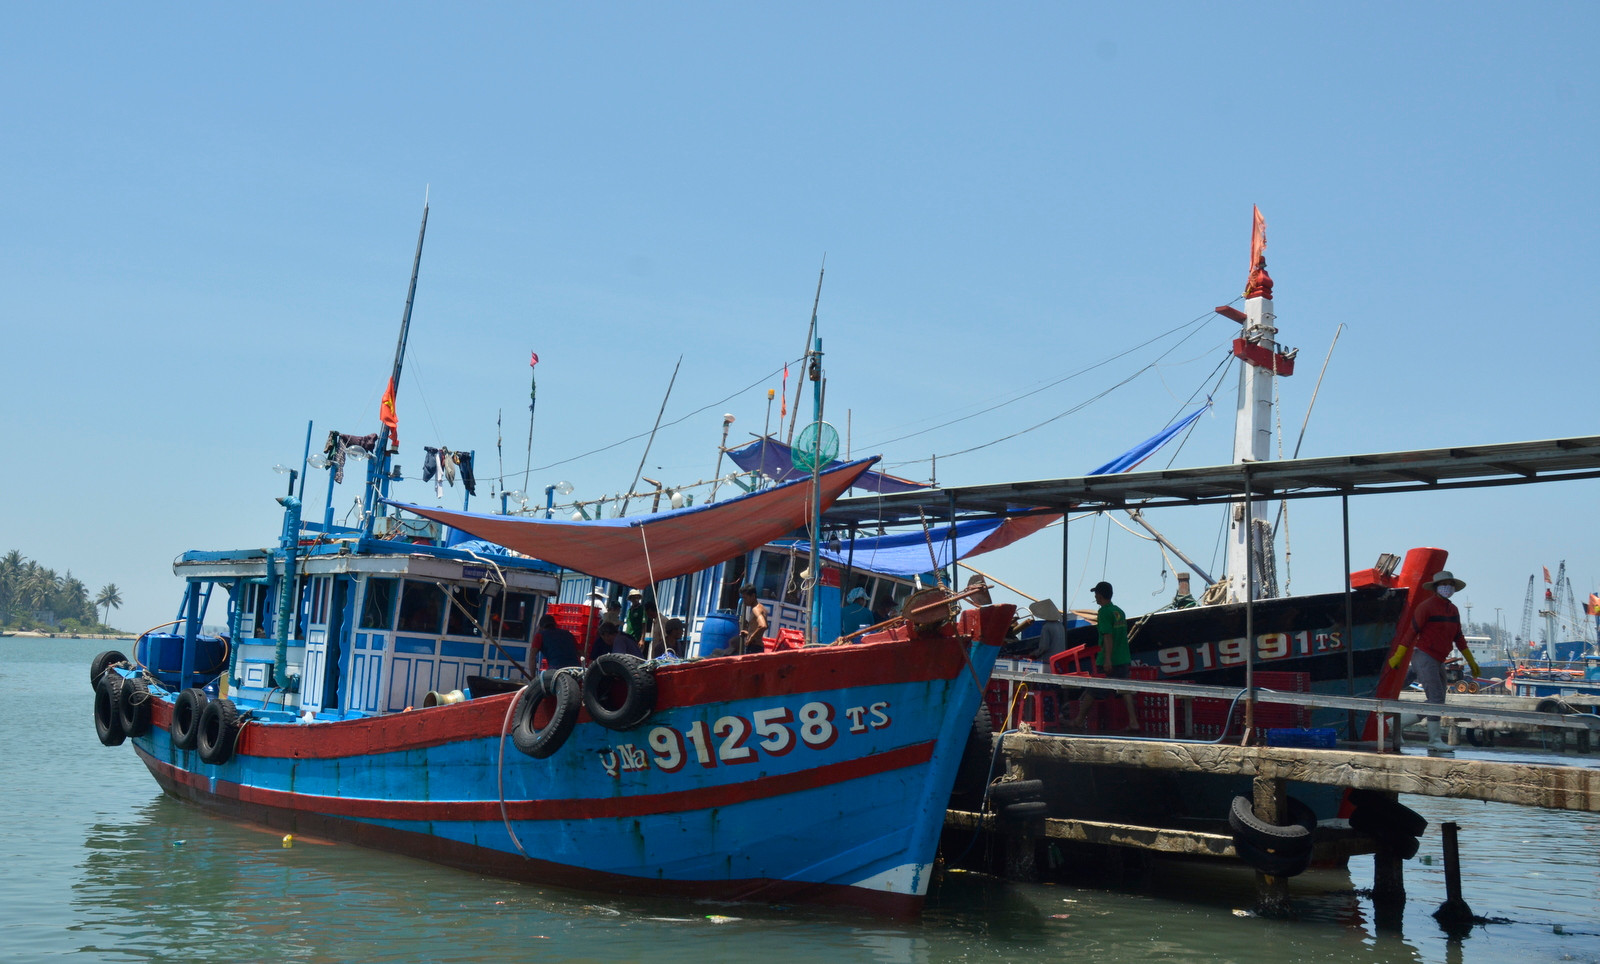 Tàu cá của ngư dân Núi Thành tại bến cá Tam Quang chuẩn bị cho chuyến đi Hoàng Sa - Trường Sa. Ảnh: XUÂN THỌ